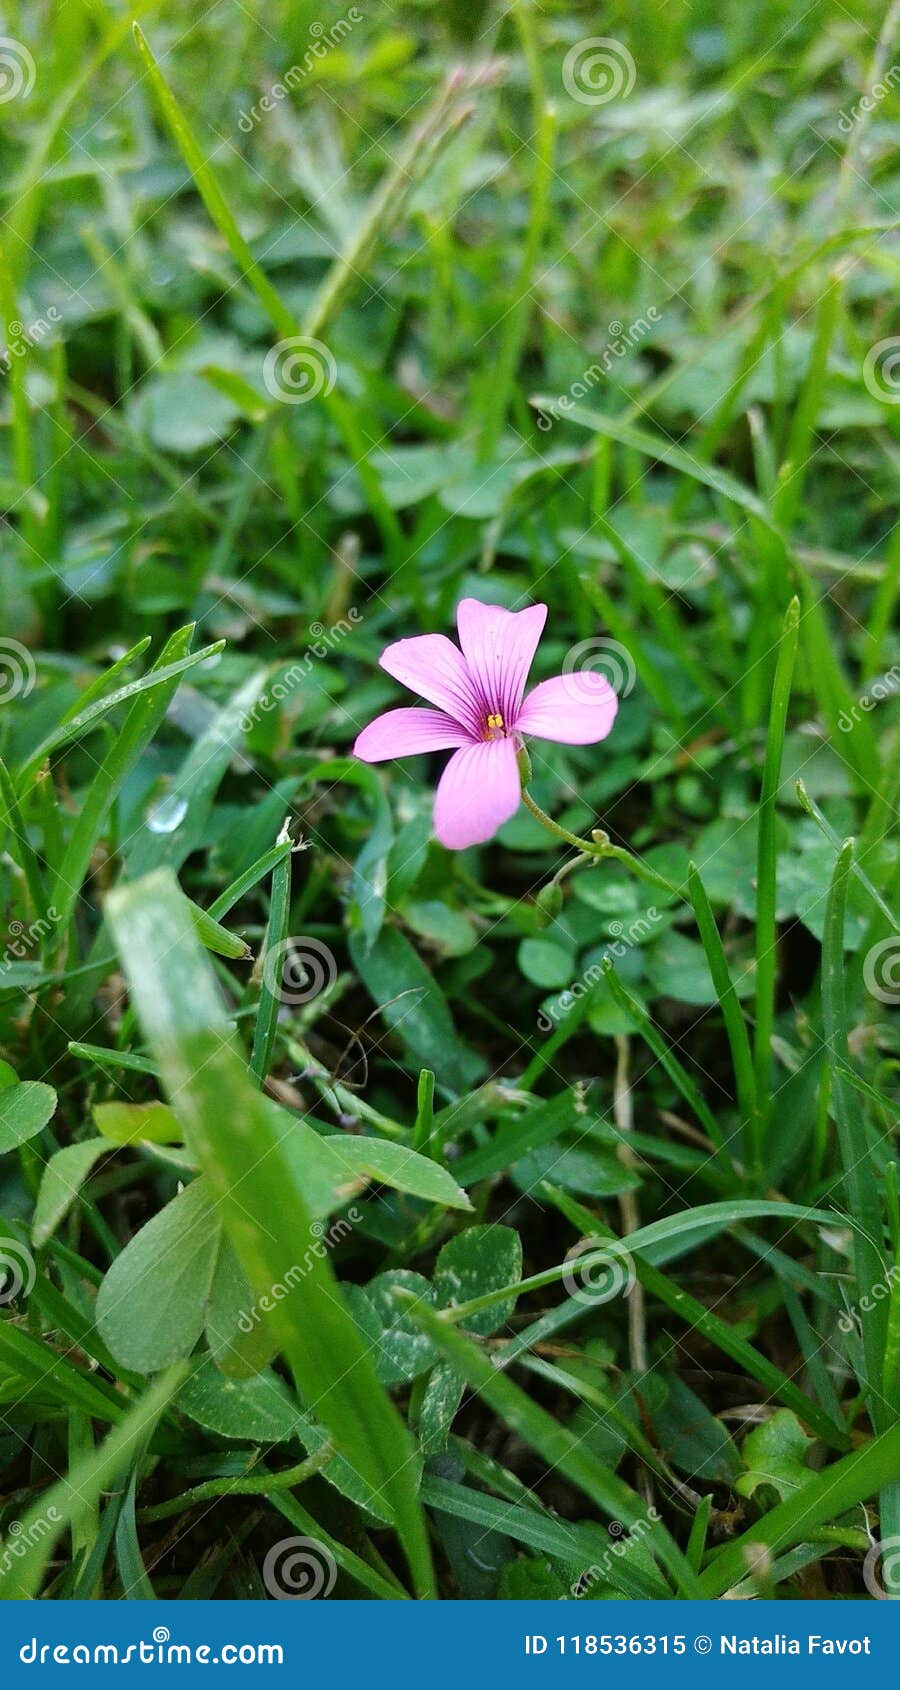 simple flower